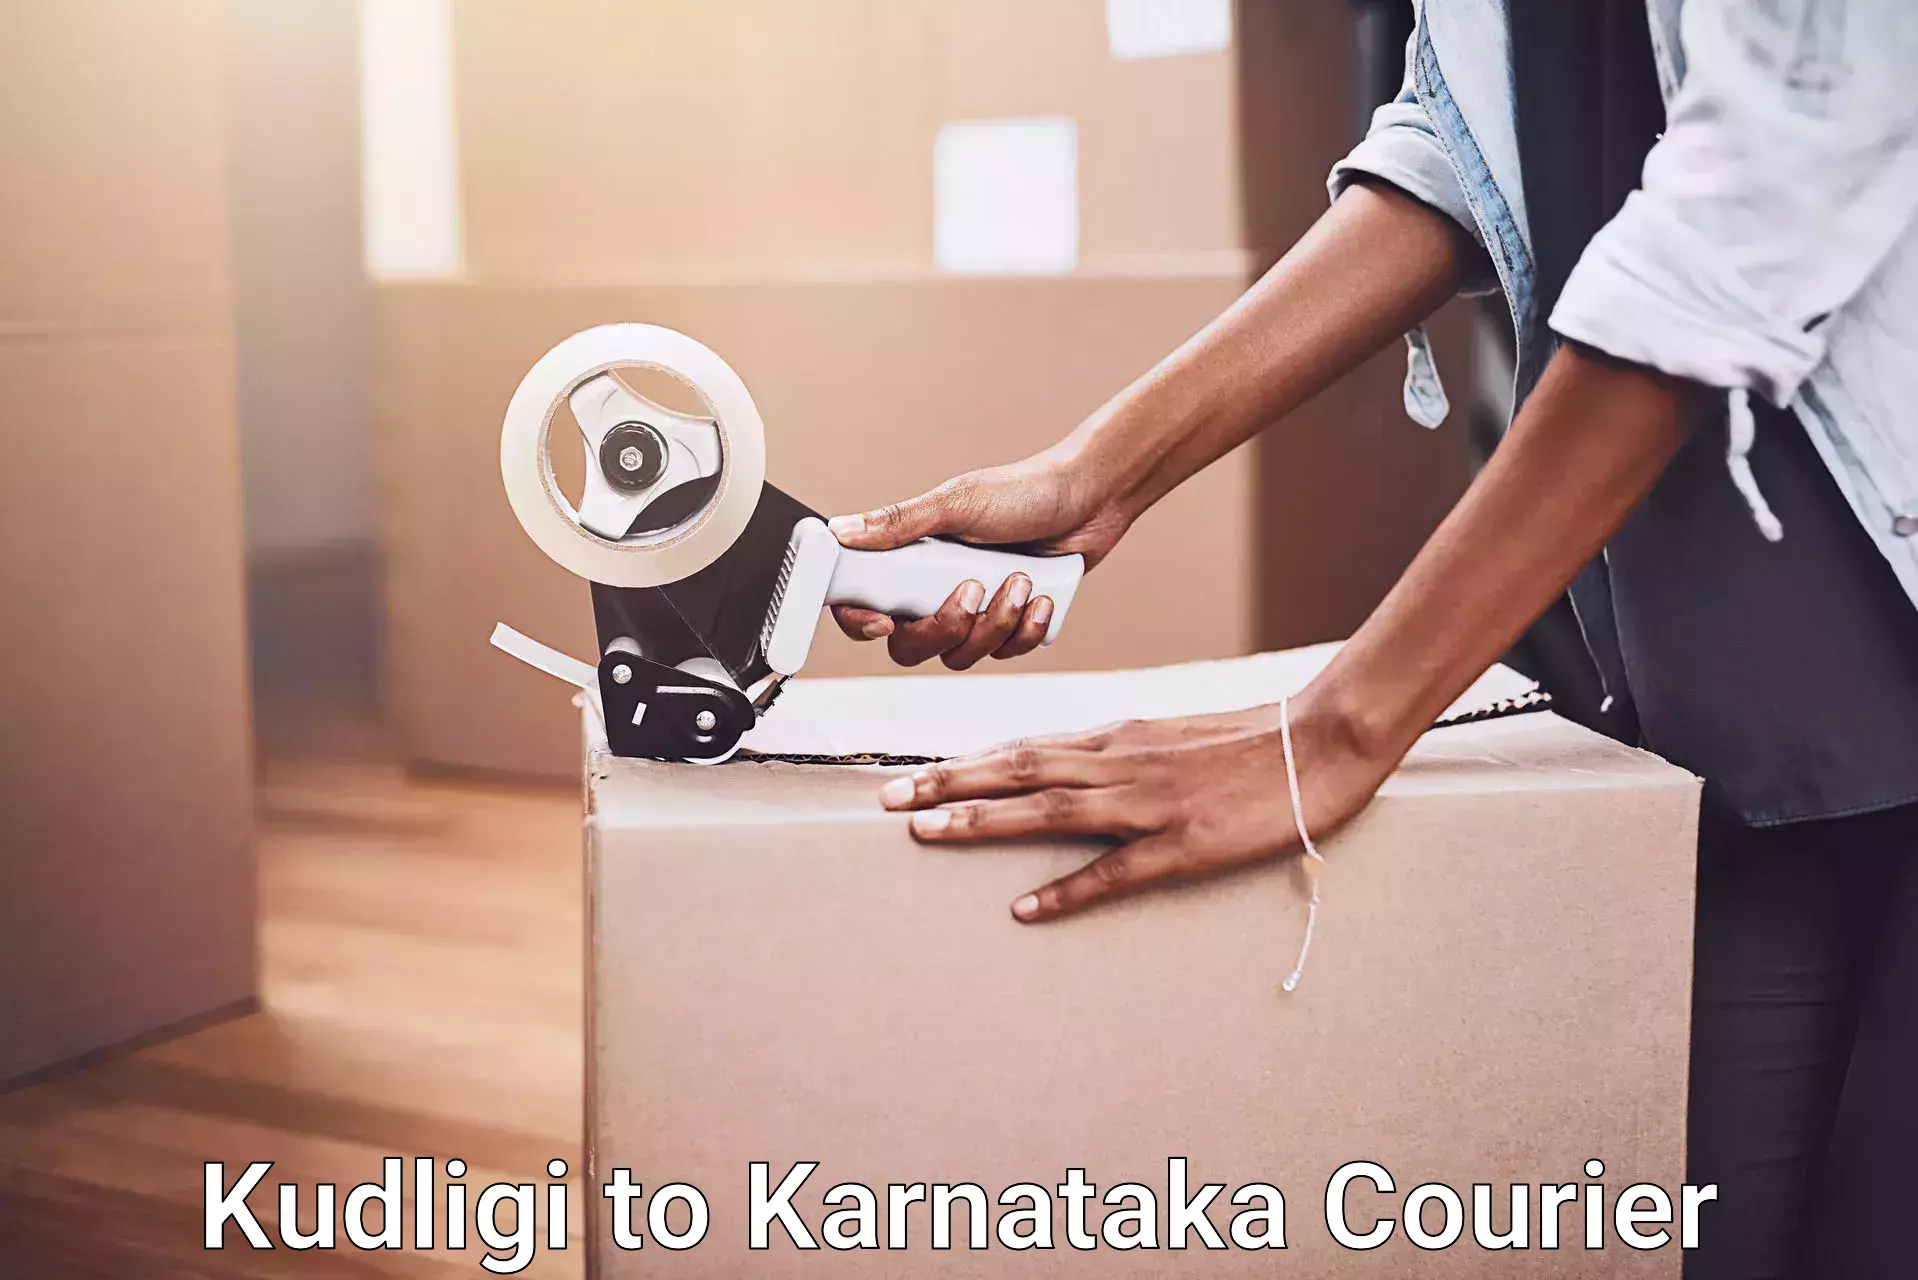 Trusted relocation experts Kudligi to Karnataka